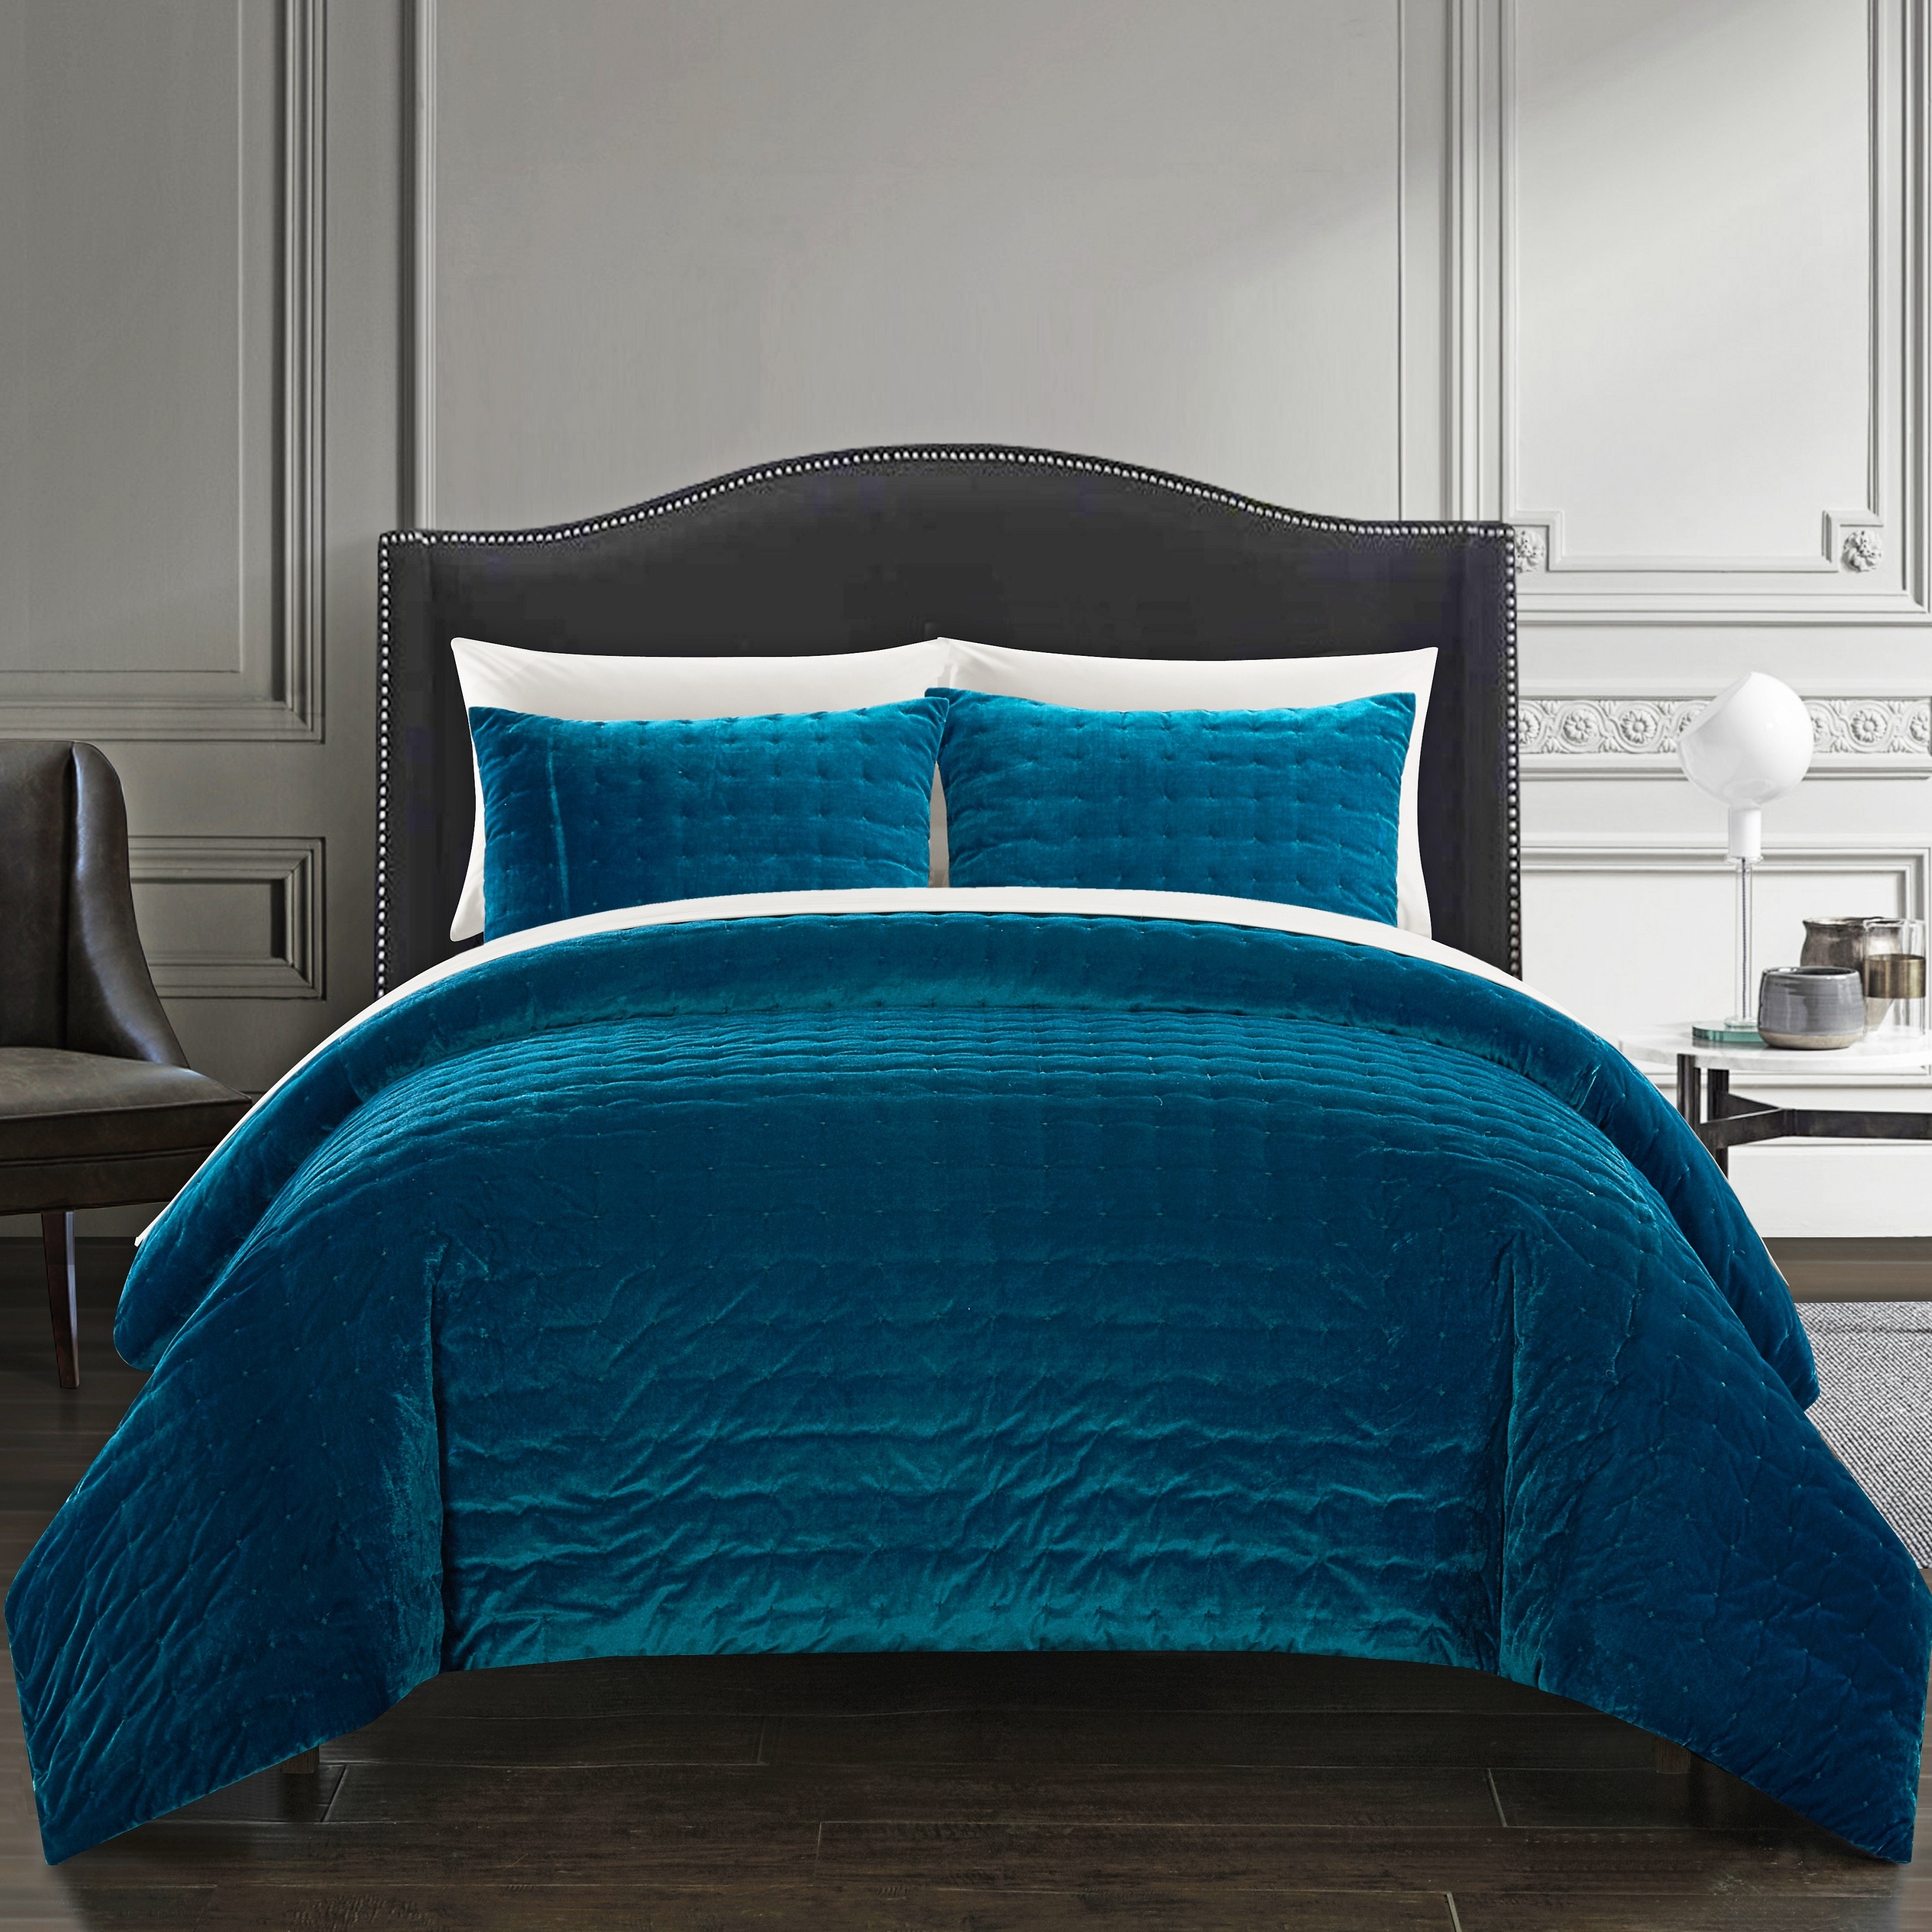 Chyna 3 Piece Comforter Set Luxurious Velvet Bedding - Teal, Queen